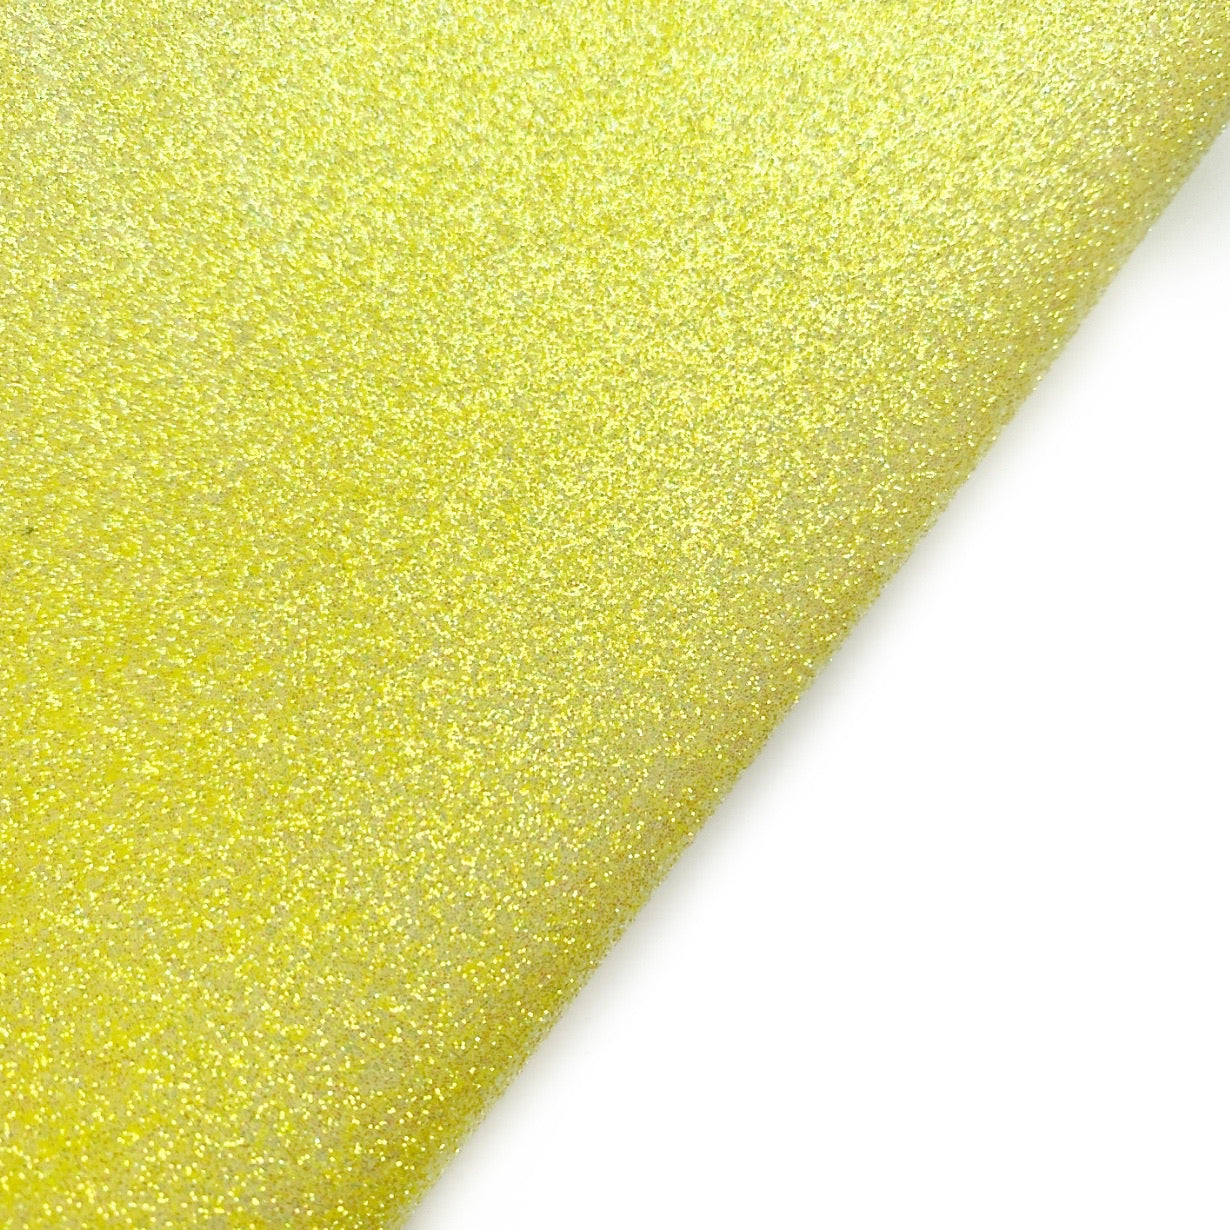 Red Lux Premium Fine Glitter Fabric – Eliza Henri Craft Supply